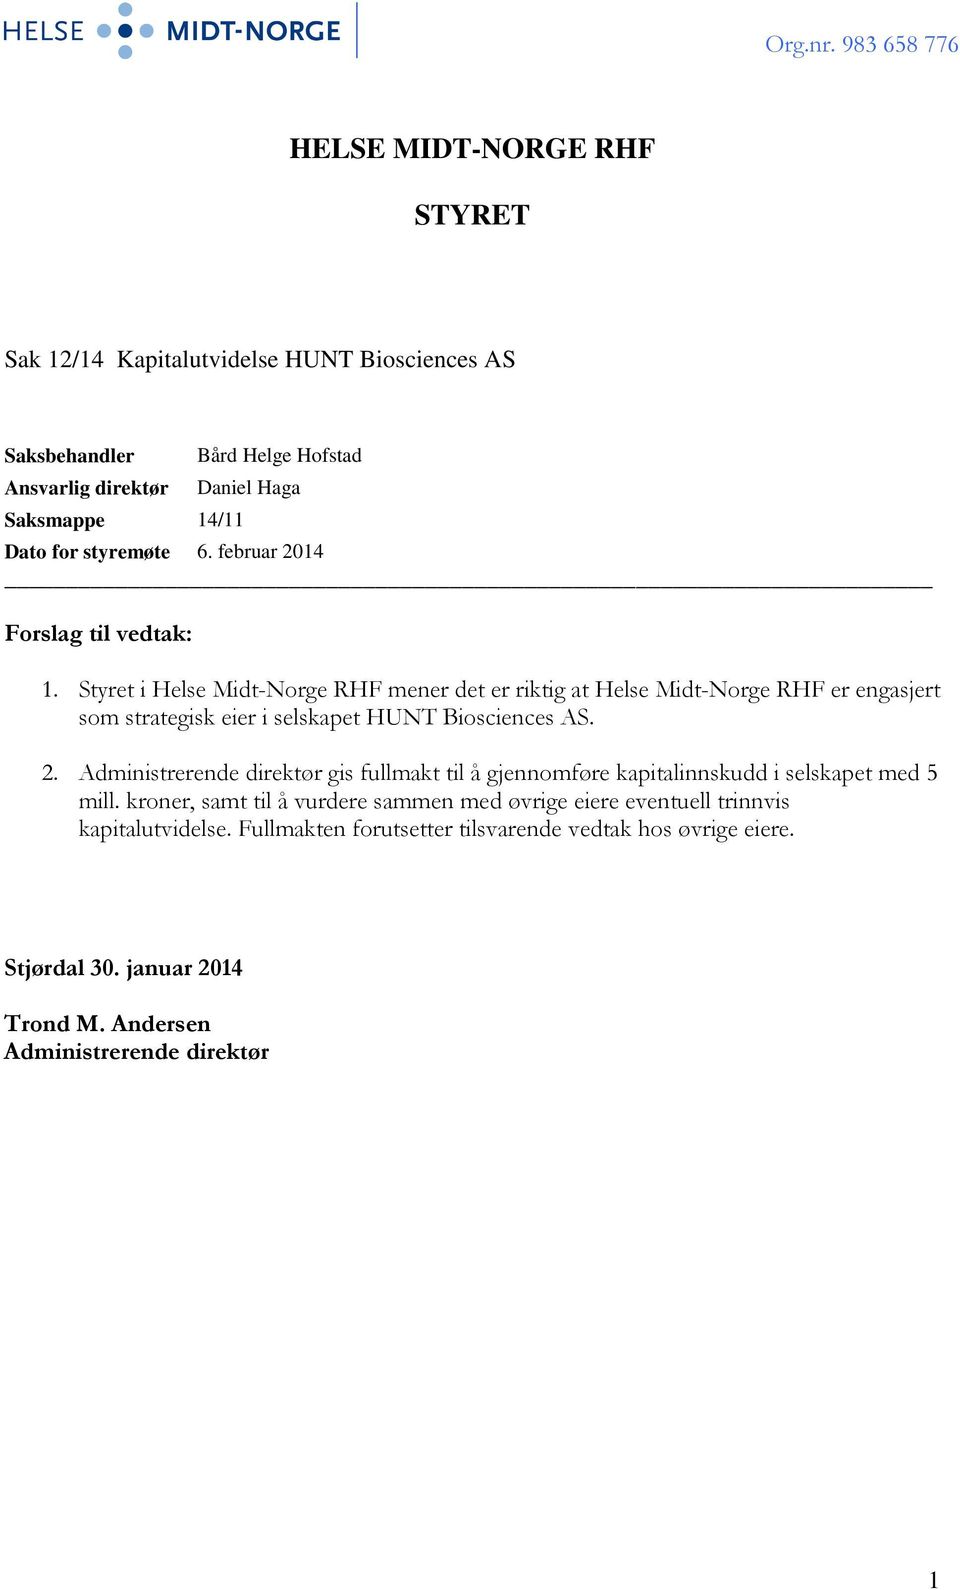 Styret i Helse Midt-Norge RHF mener det er riktig at Helse Midt-Norge RHF er engasjert som strategisk eier i selskapet HUNT Biosciences AS. 2.